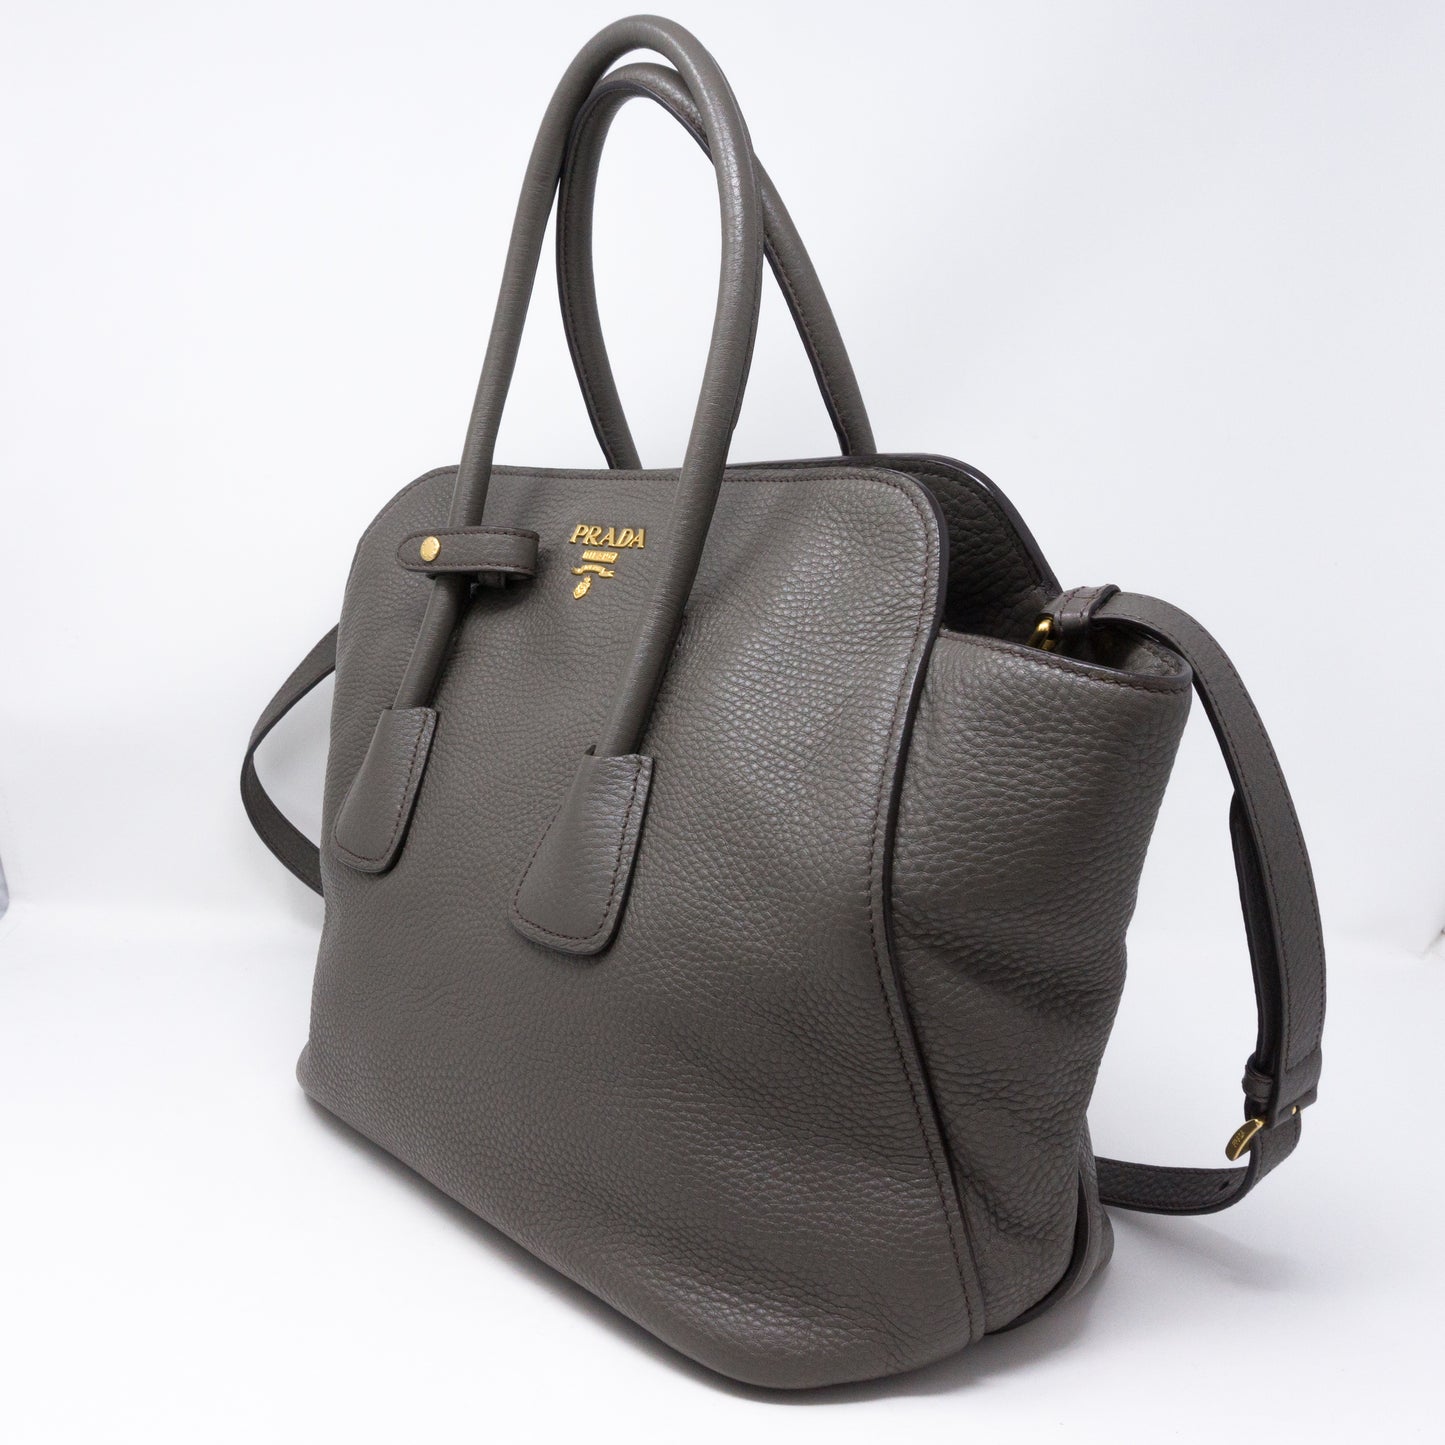 Two-way Handbag Gray Leather